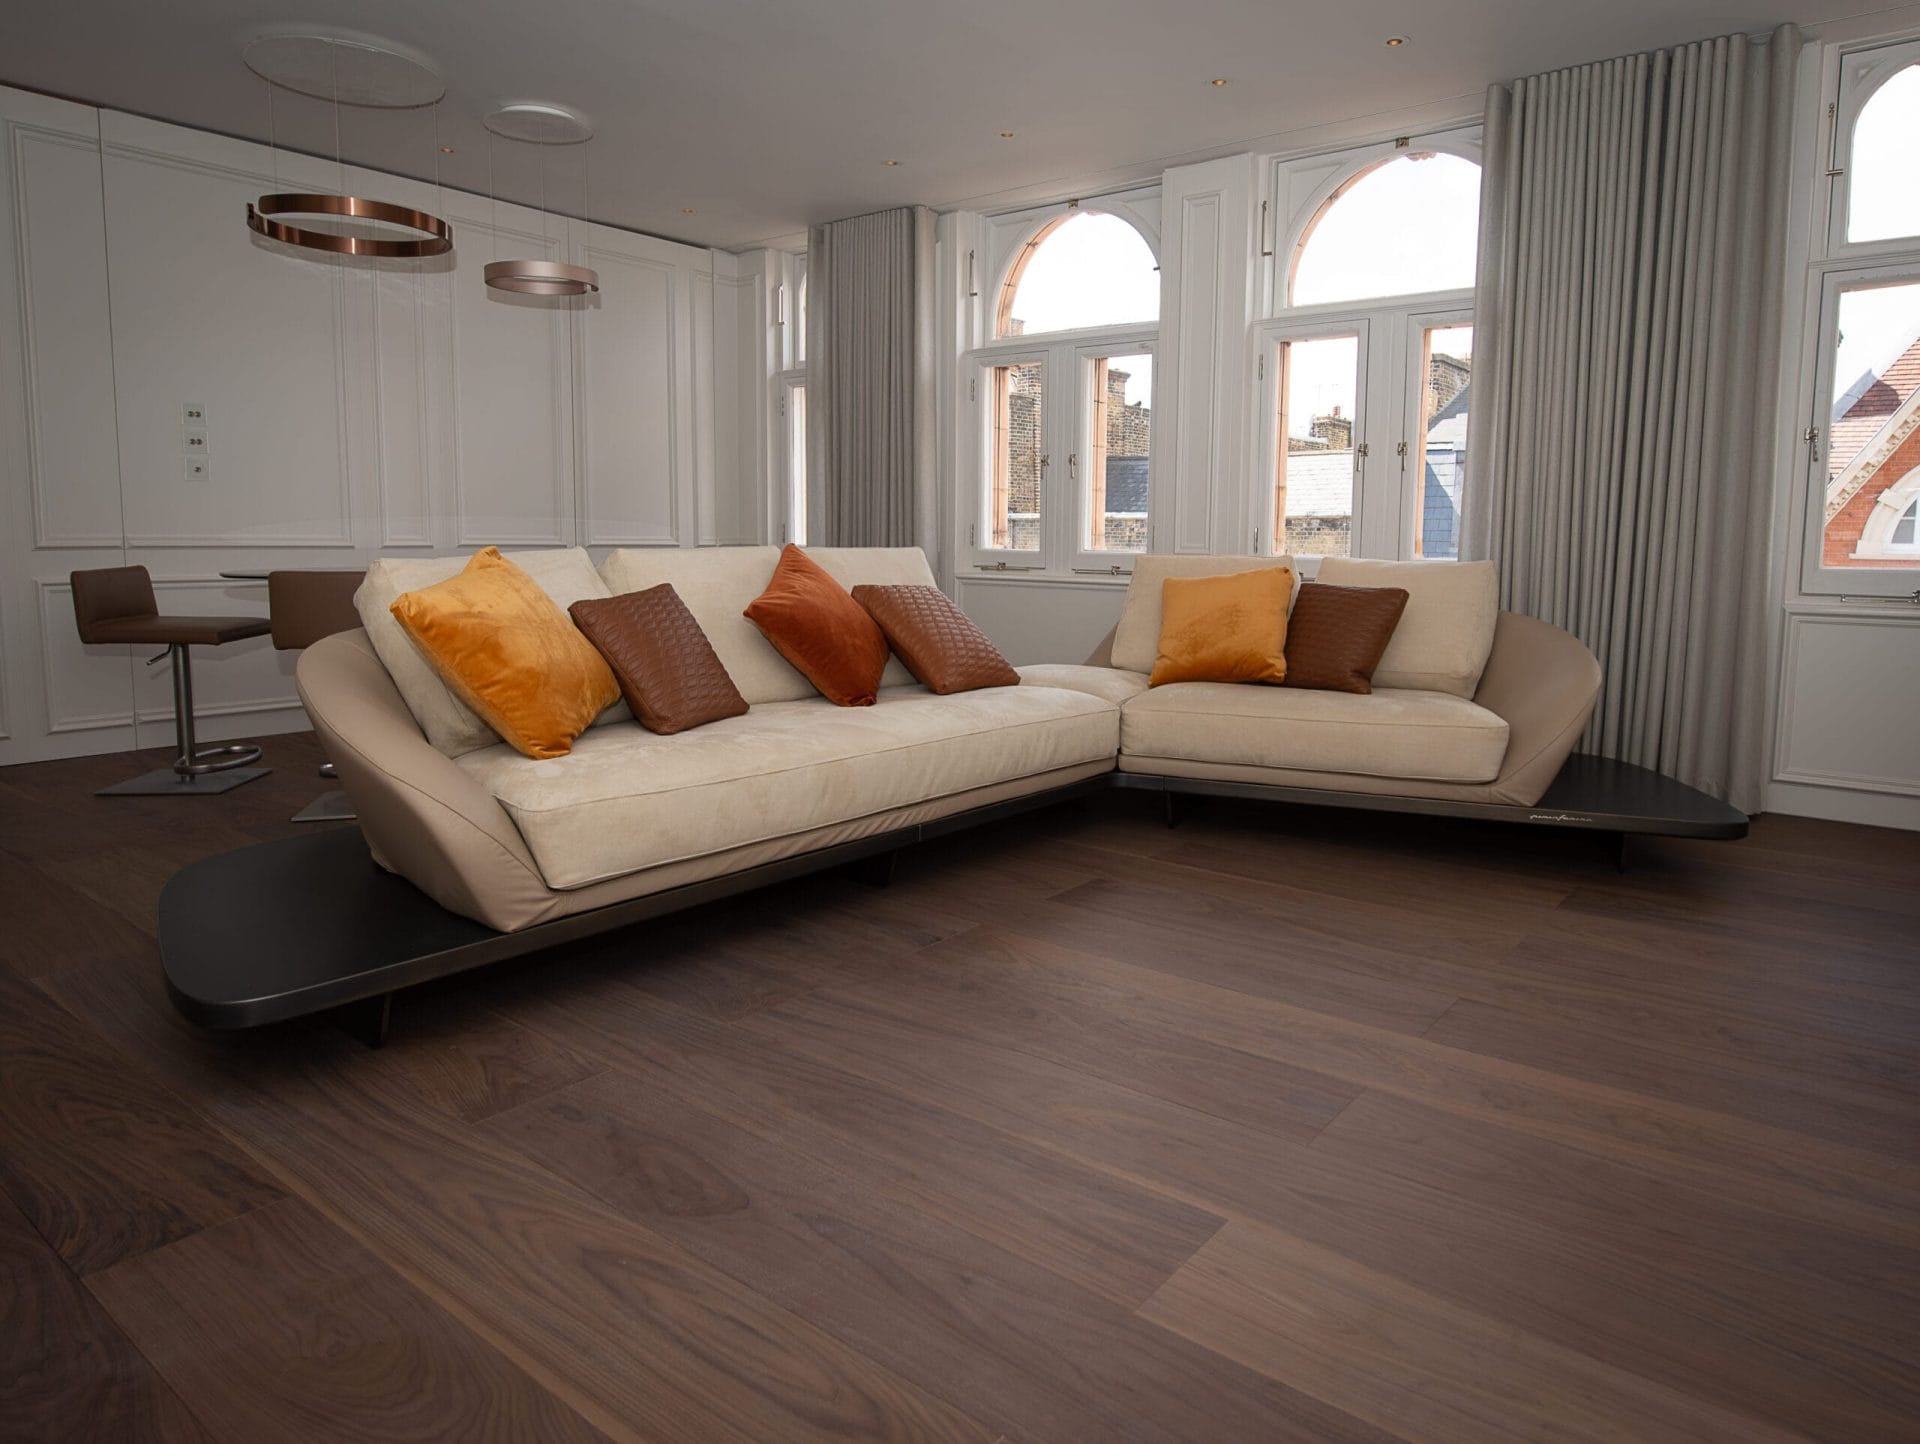 American Walnut flooring with modern sofa